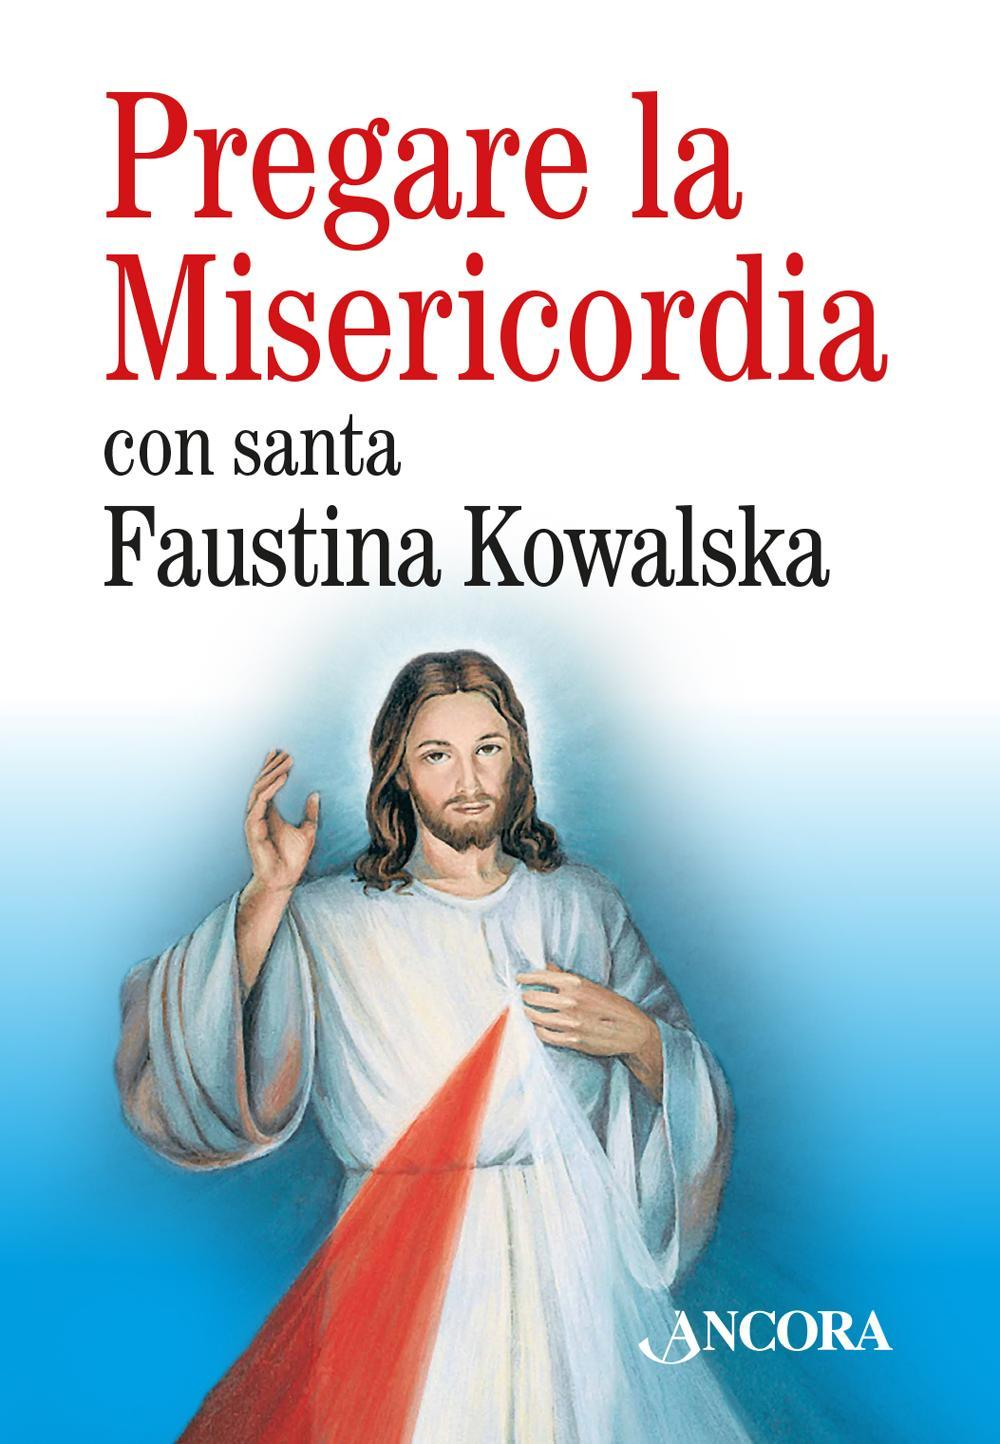 Image of Pregare la misericordia